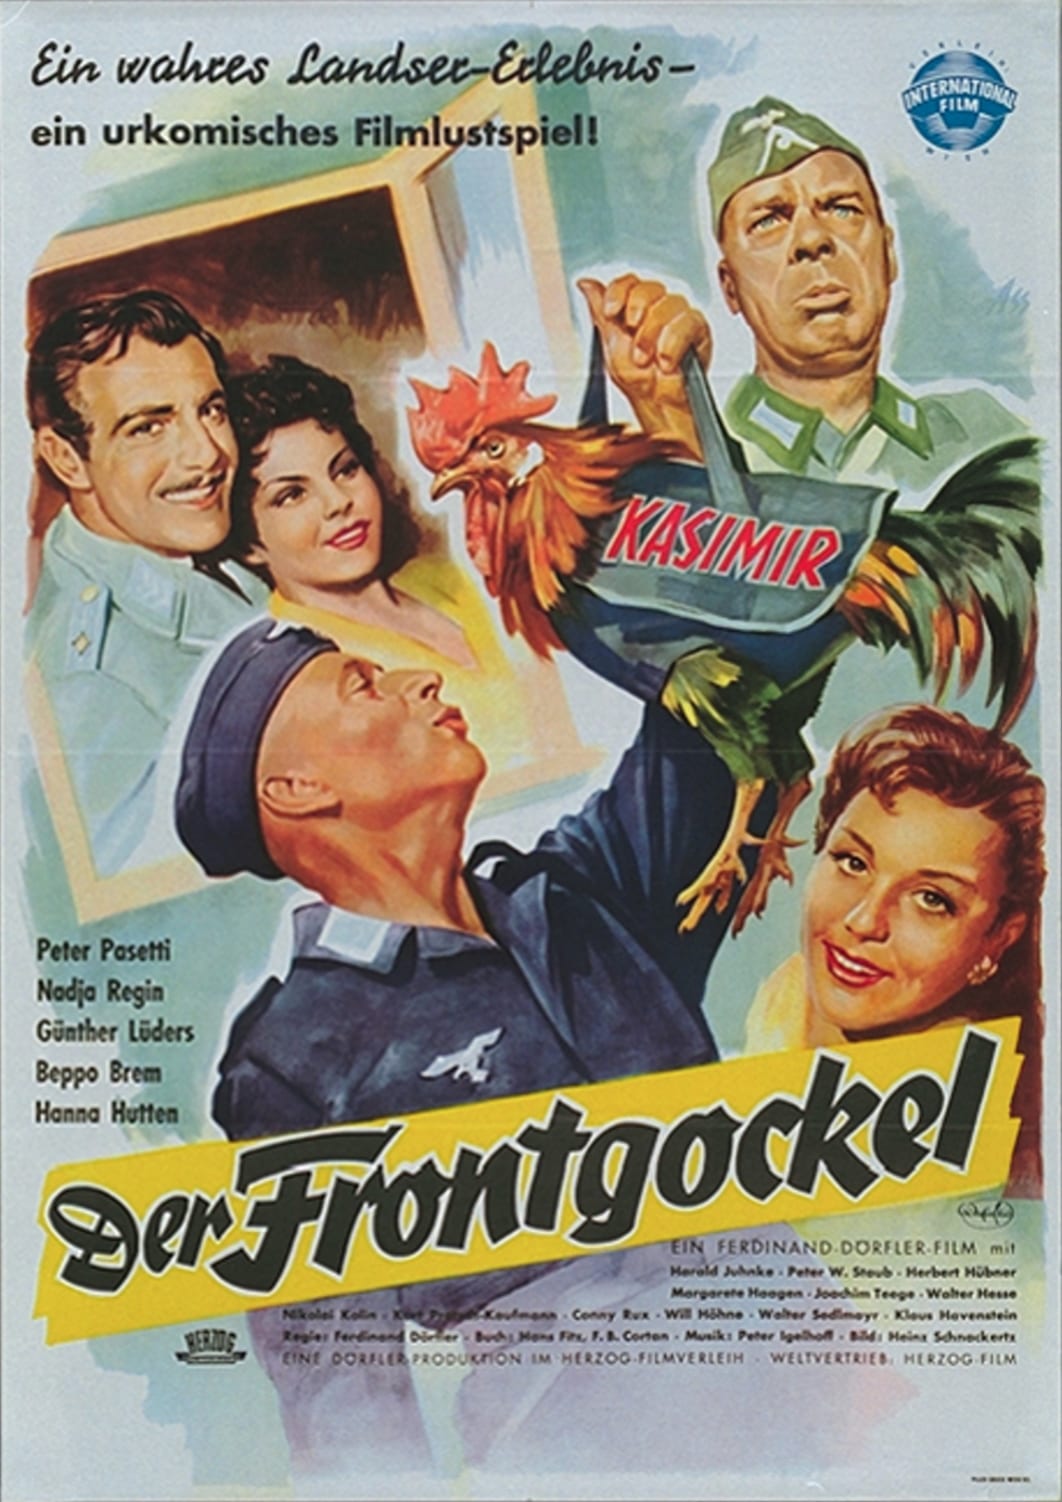 Der Frontgockel (1955)